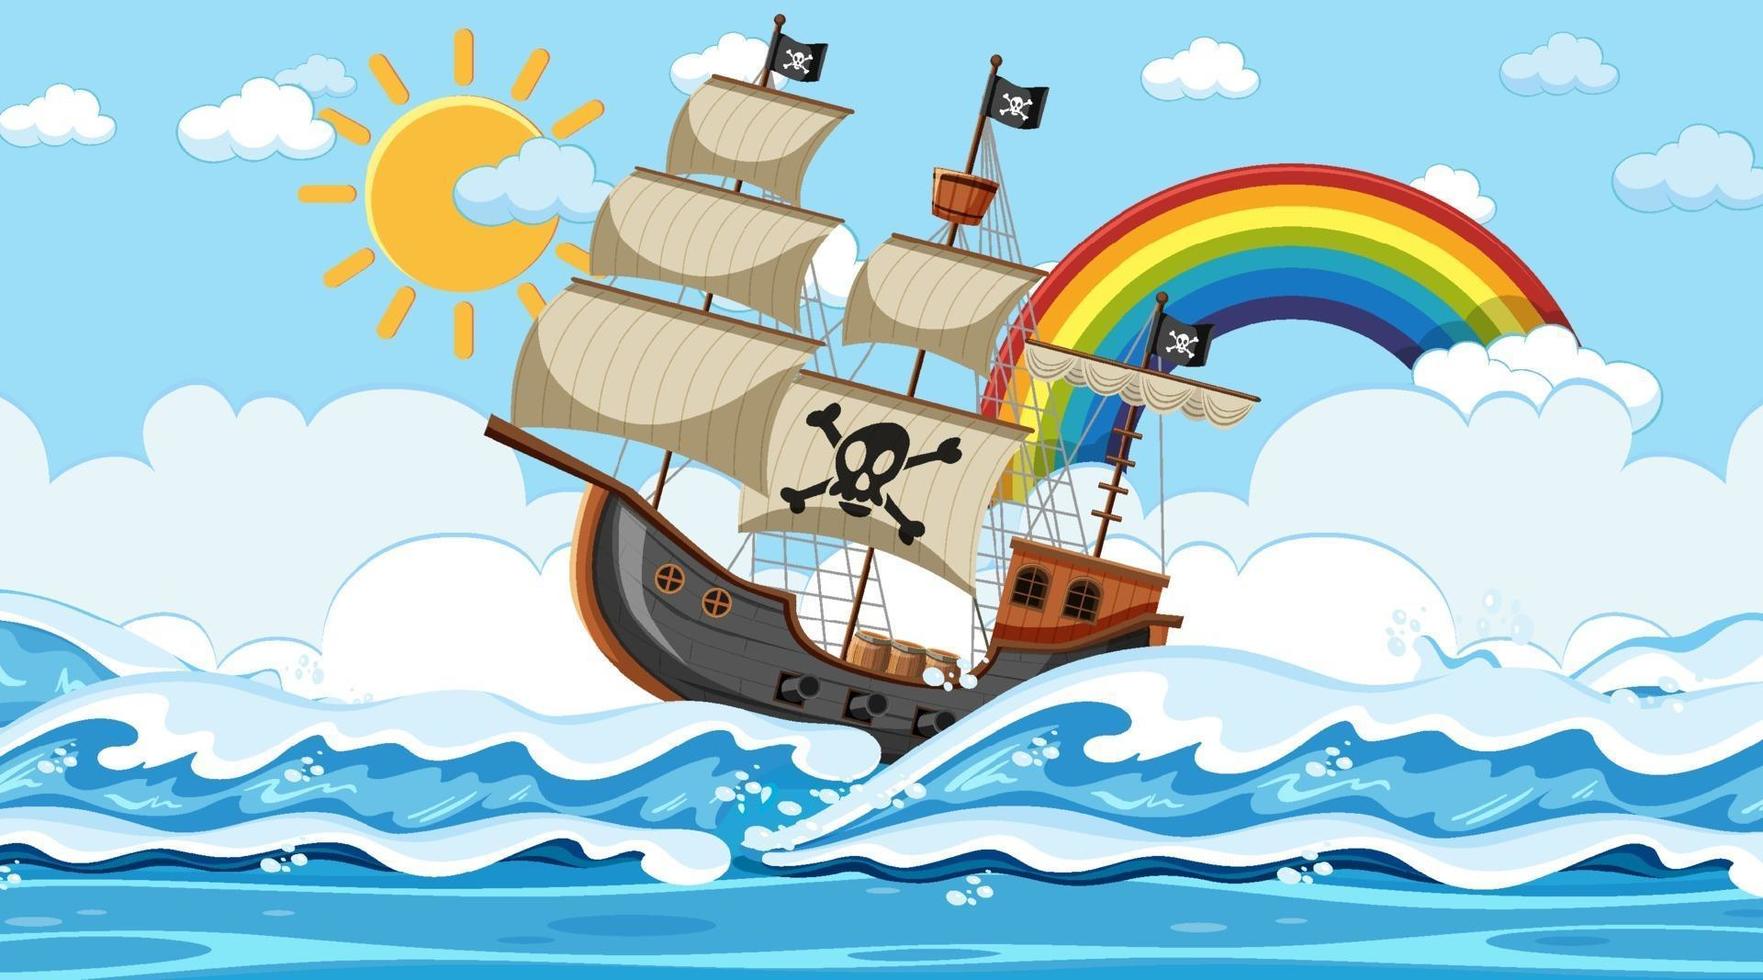 scena dell'oceano durante il giorno con la nave pirata in stile cartone animato vettore